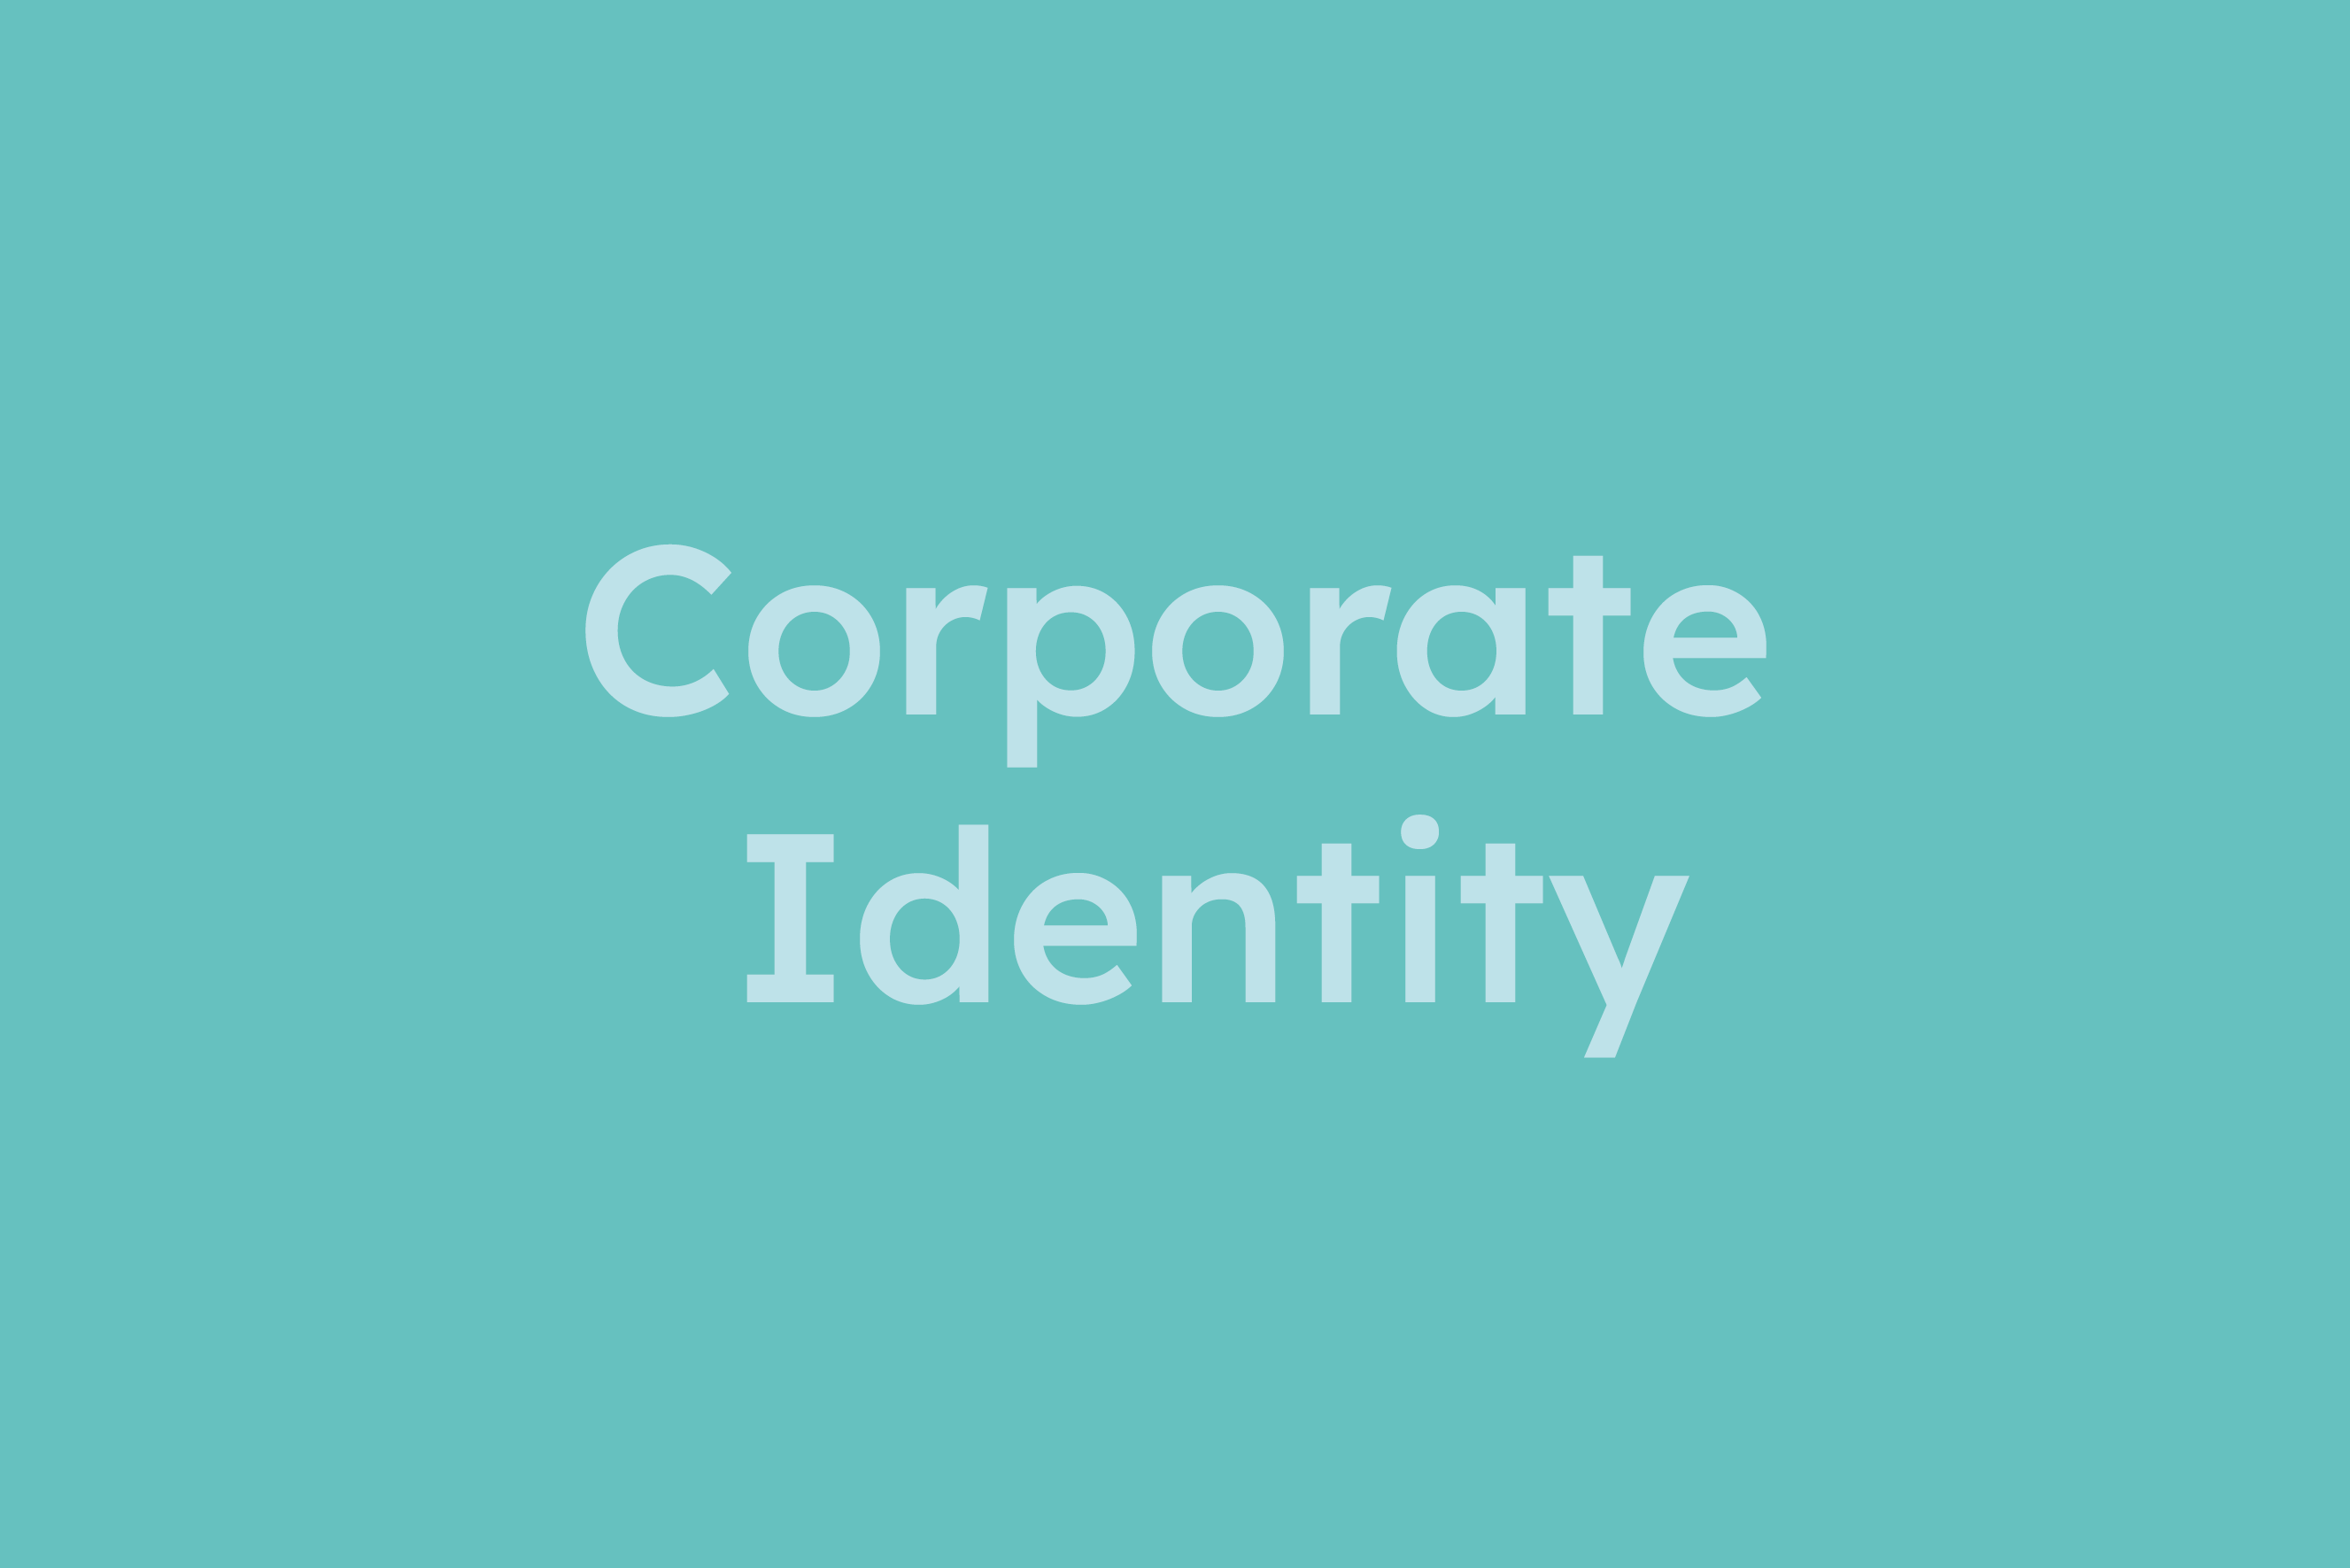 Corporate Identity erklärt im Glossar von Campaign